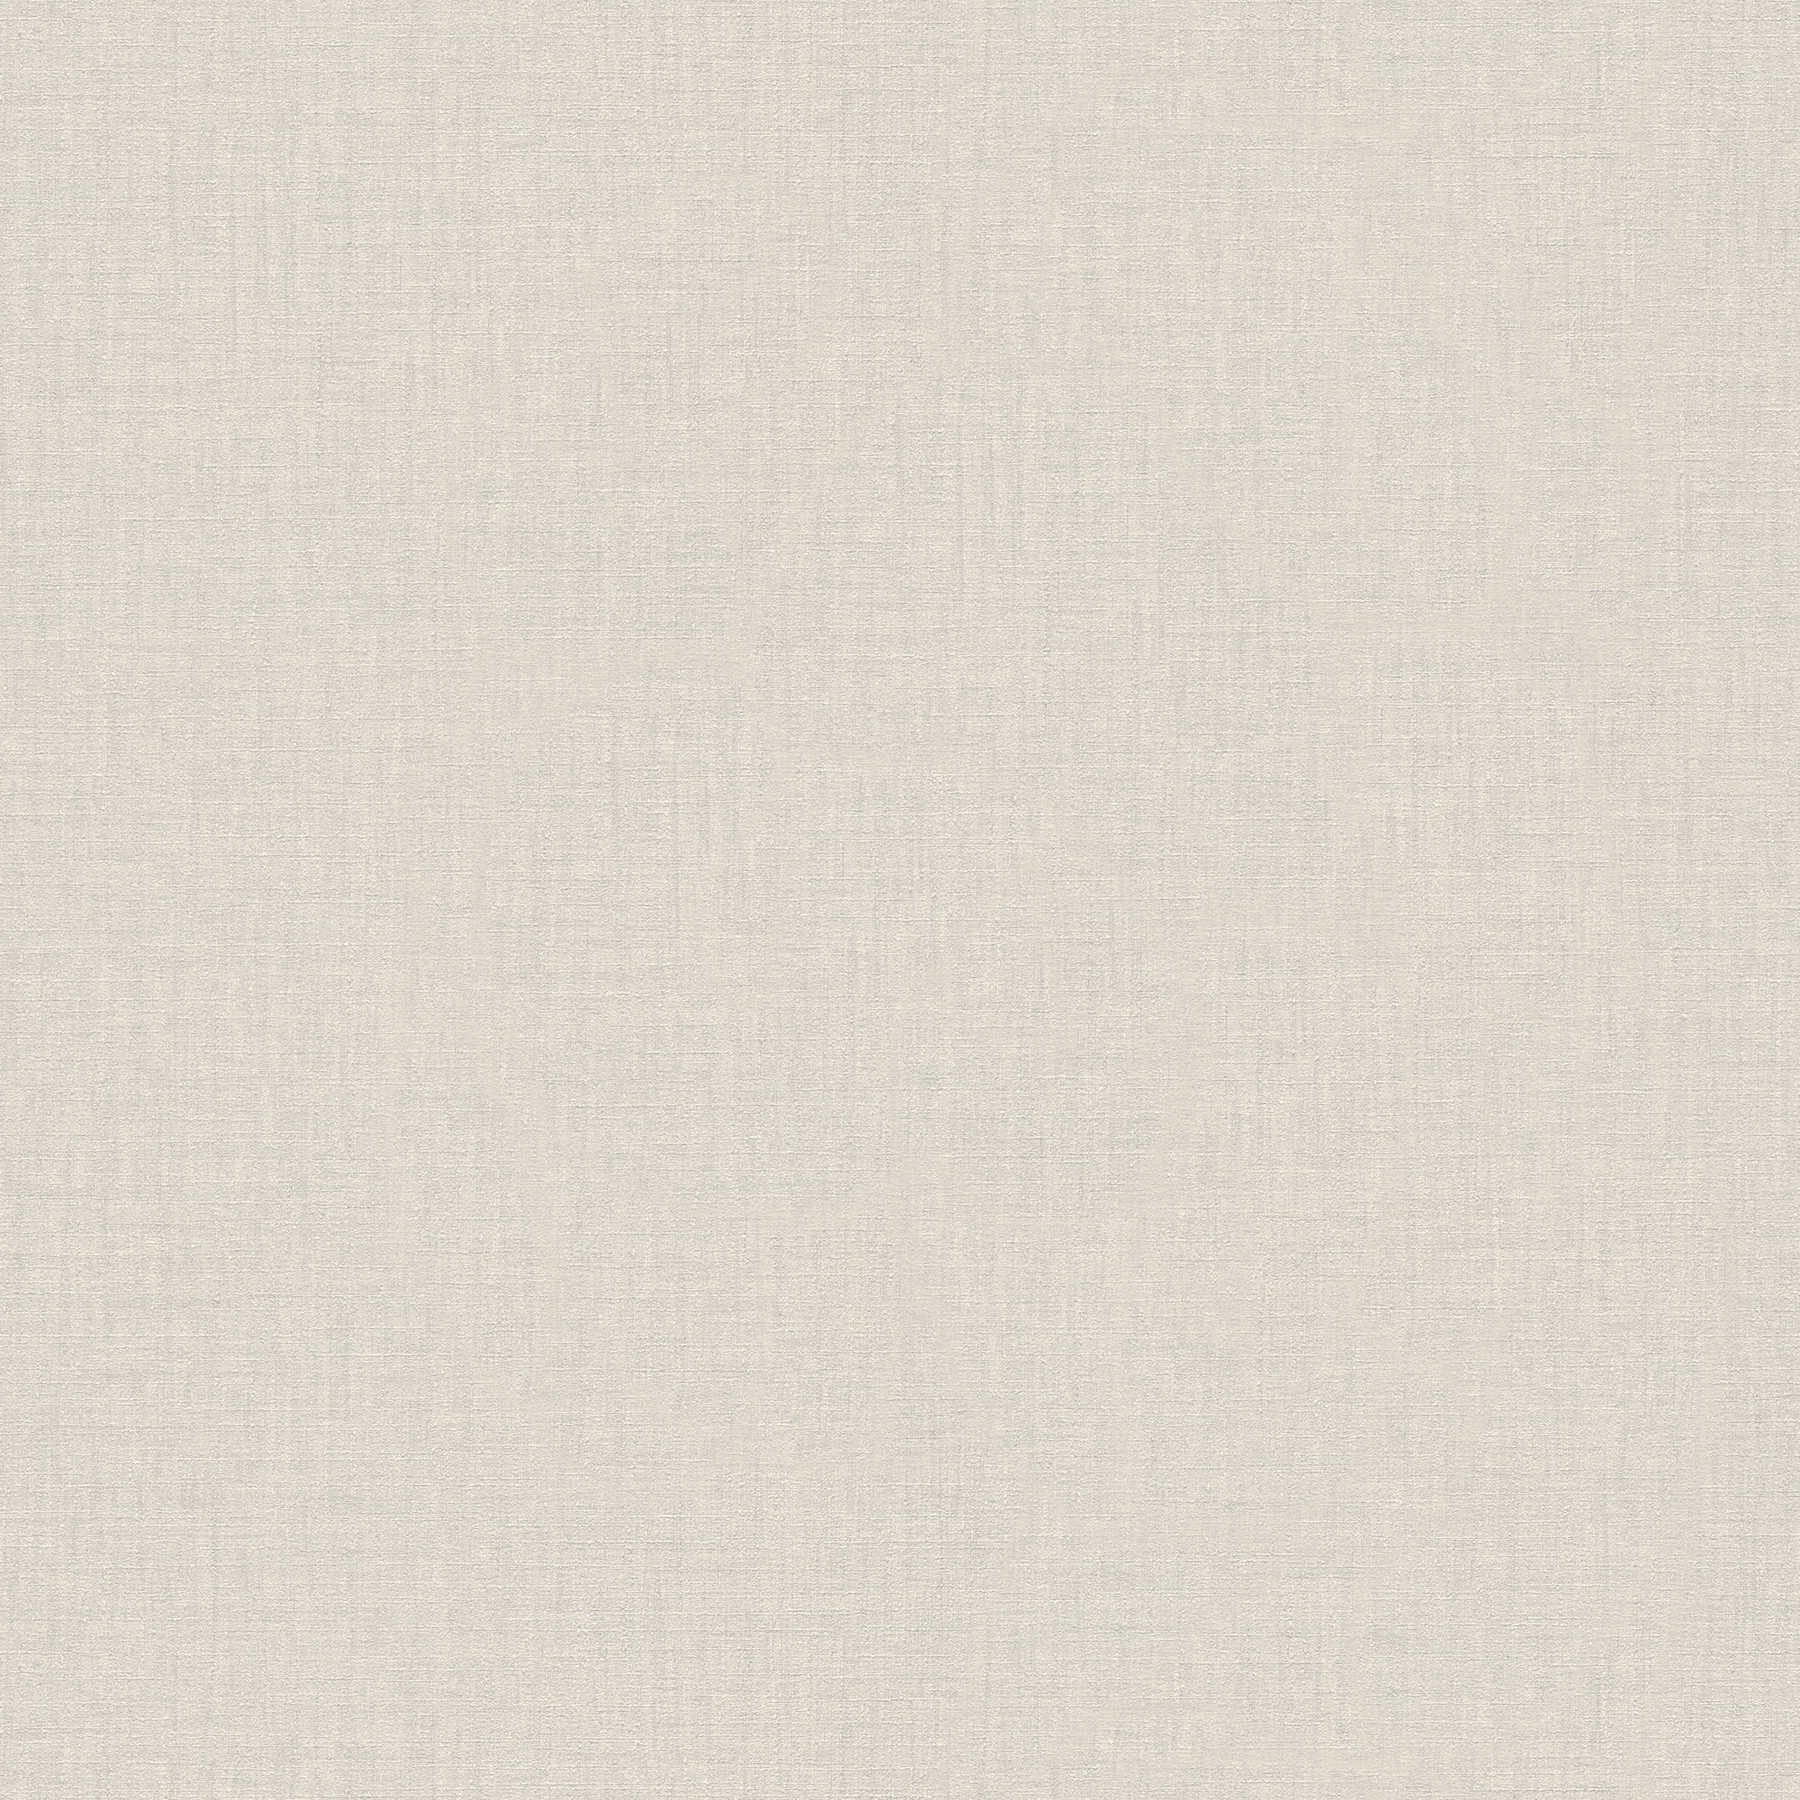 VERSACE Papier peint uni - Blanc chiné - Crème, blanc, gris
